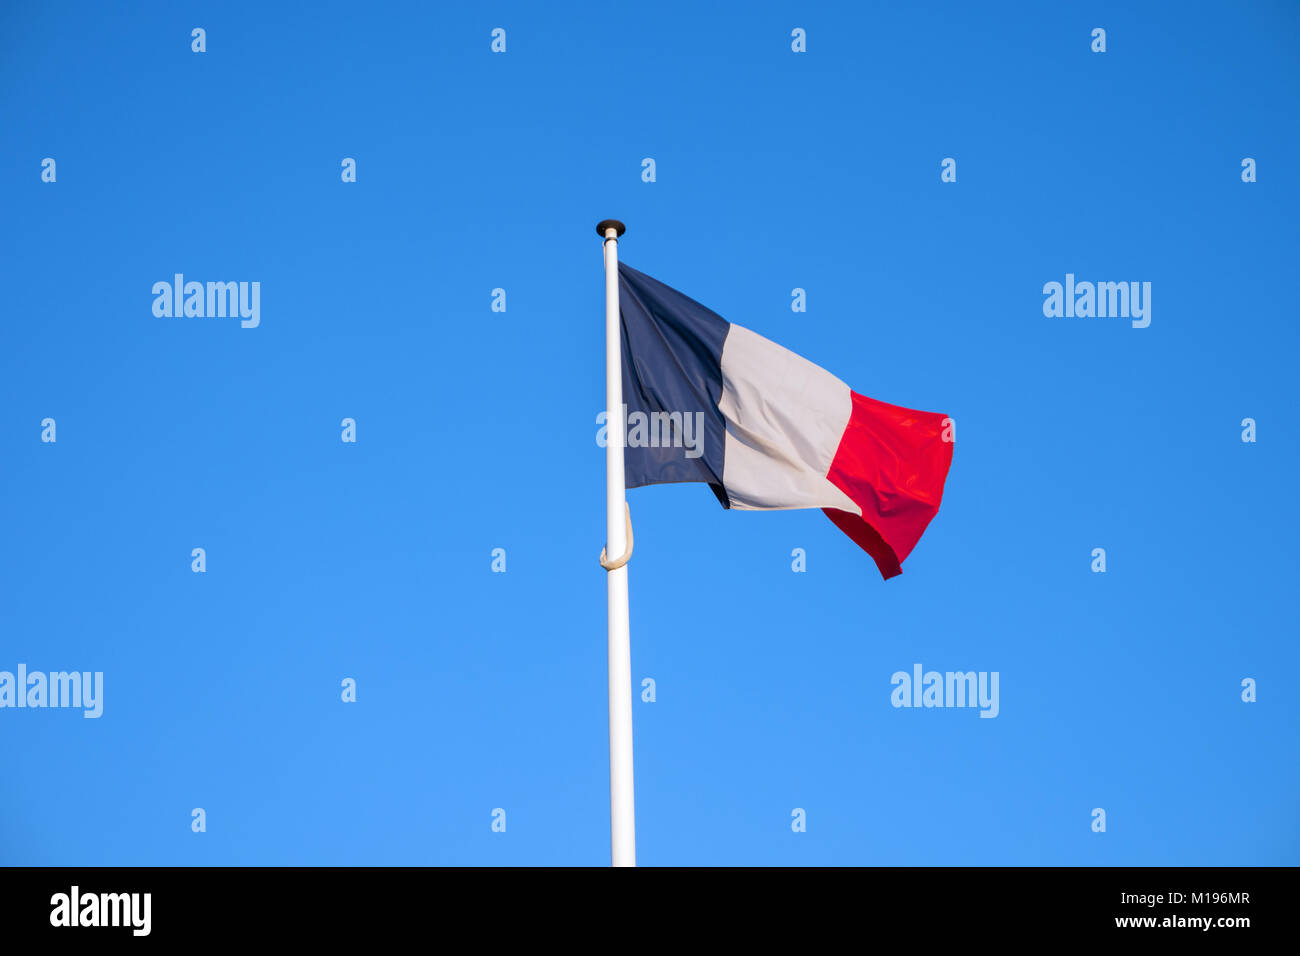 Bandera oficial nacional francesa sobre fondo de cielo azul. Símbolo de Francia. Francés patriótico banner, diseño. Pabellón de Francia sobre la bandera ondeando en el viento Foto de stock